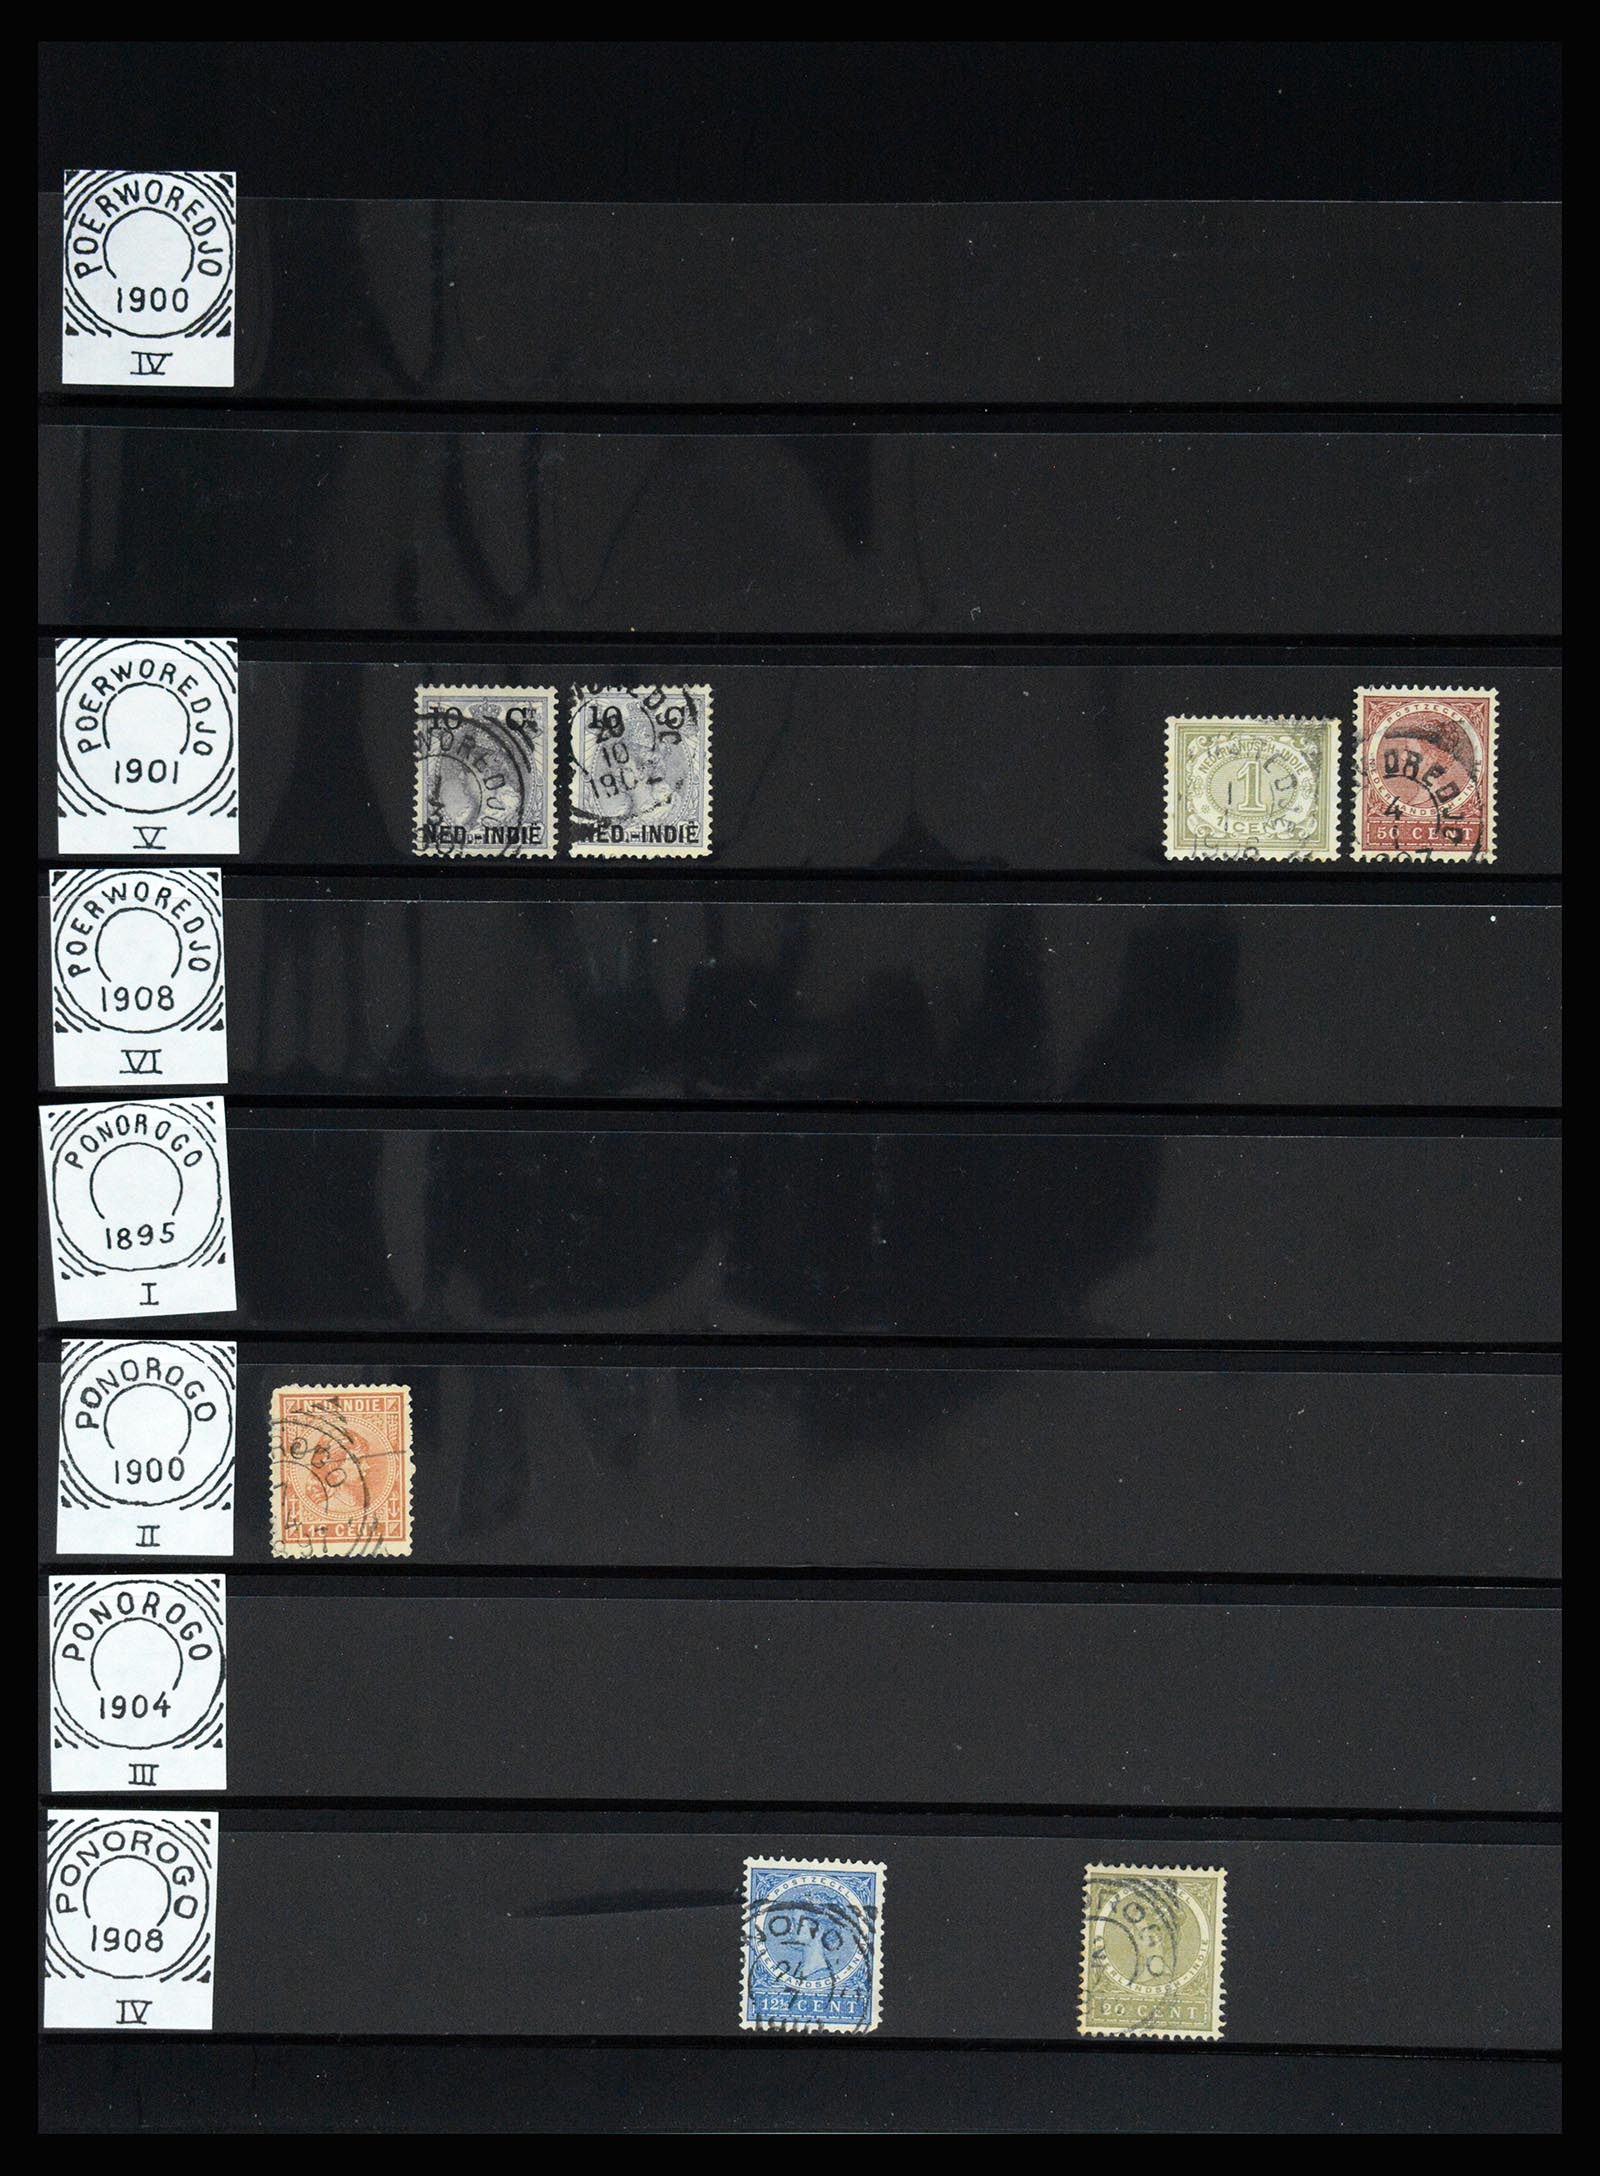 36512 139 - Stamp collection 36512 Nederlands Indië stempels 1872-1930.